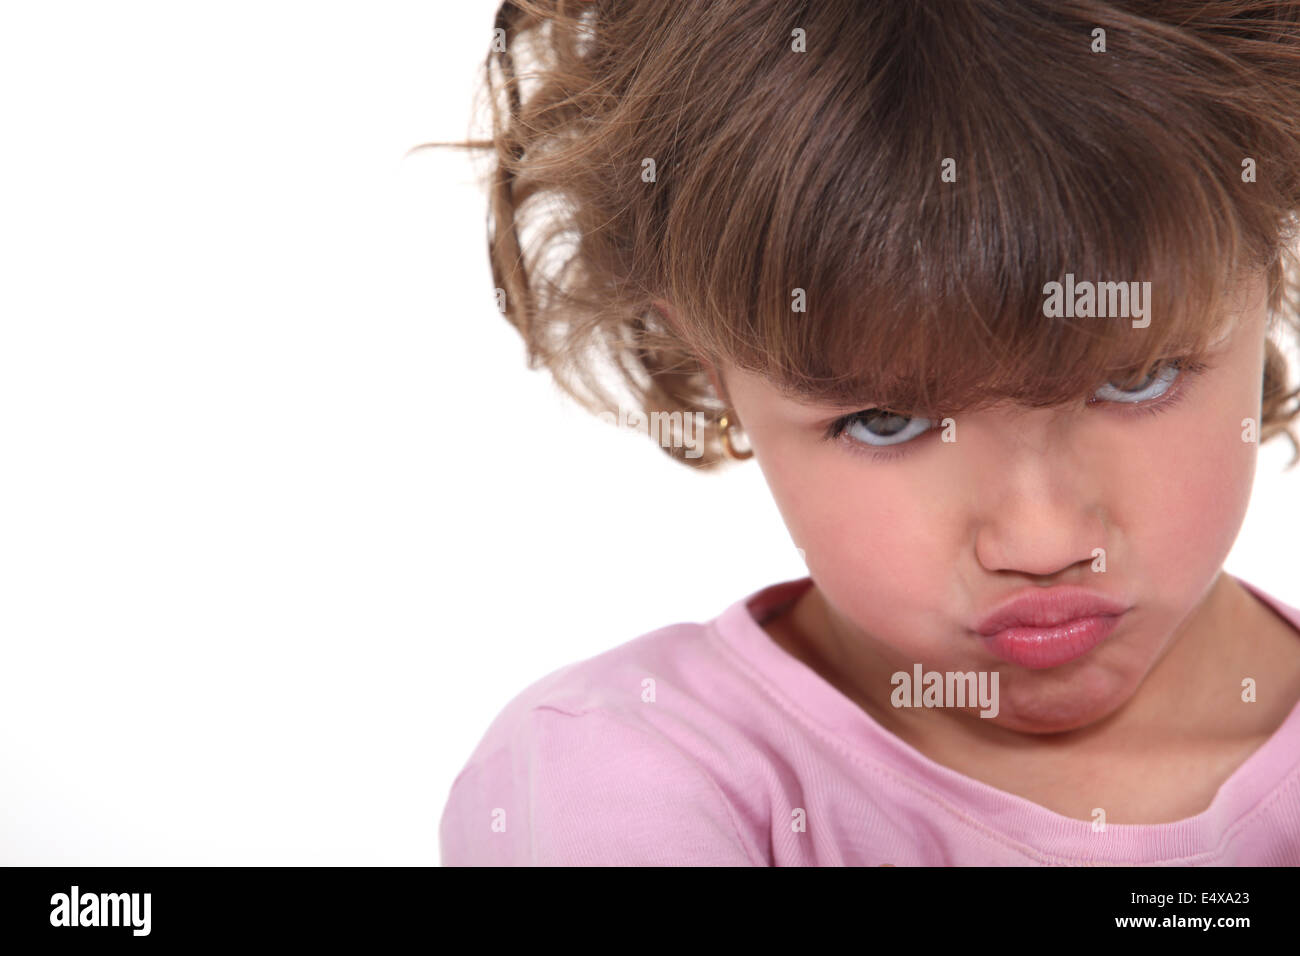 sulky little girl Stock Photo